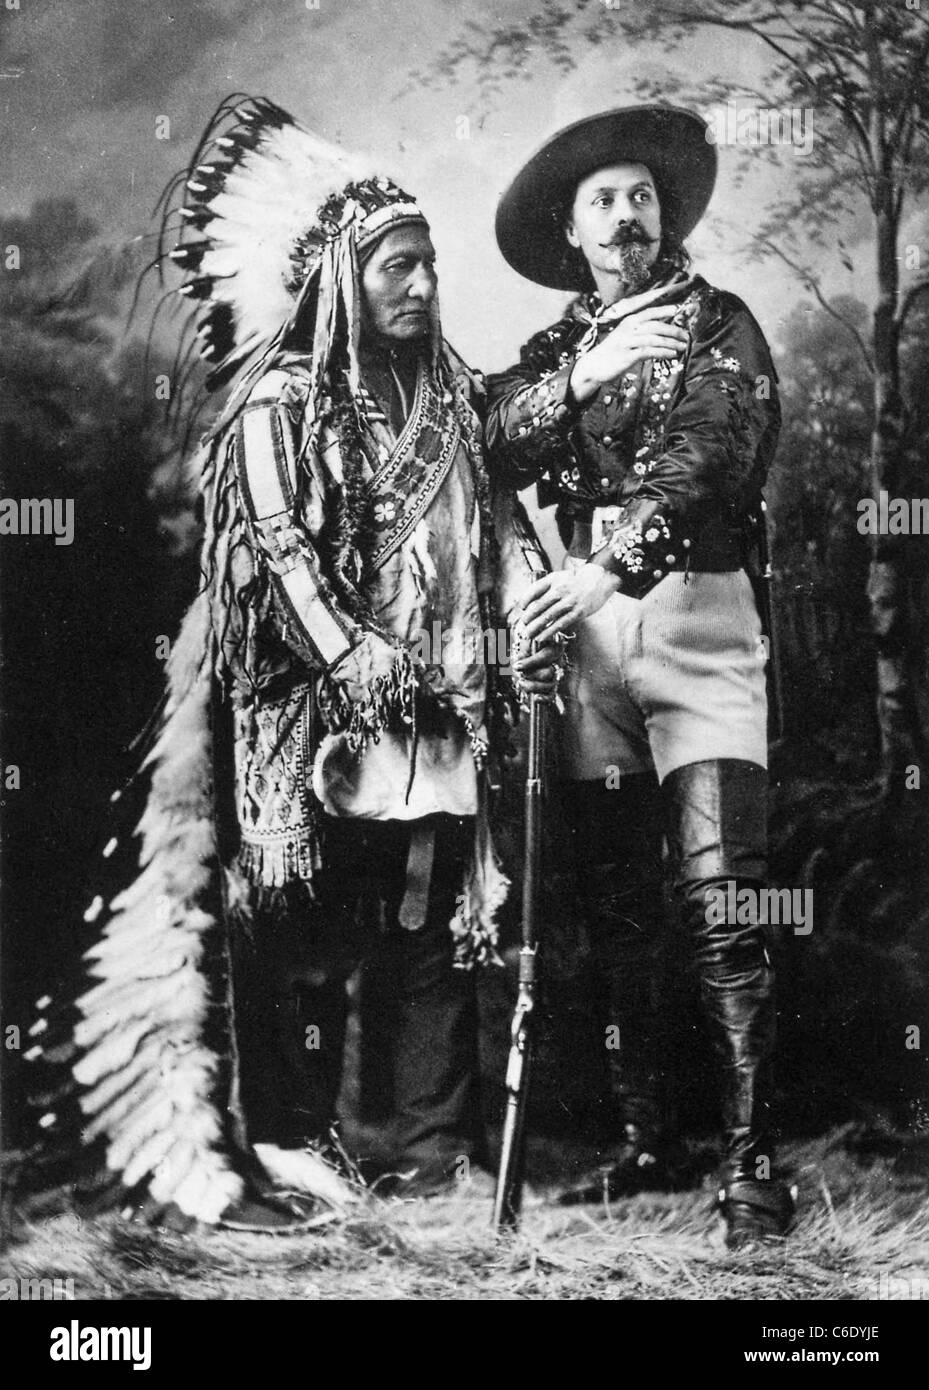 WILLIAM "BUFFALO BILL" Cody (1846-1917) soldat américain, Hunter et showman à droite avec Sitting Bull en 1885 Banque D'Images